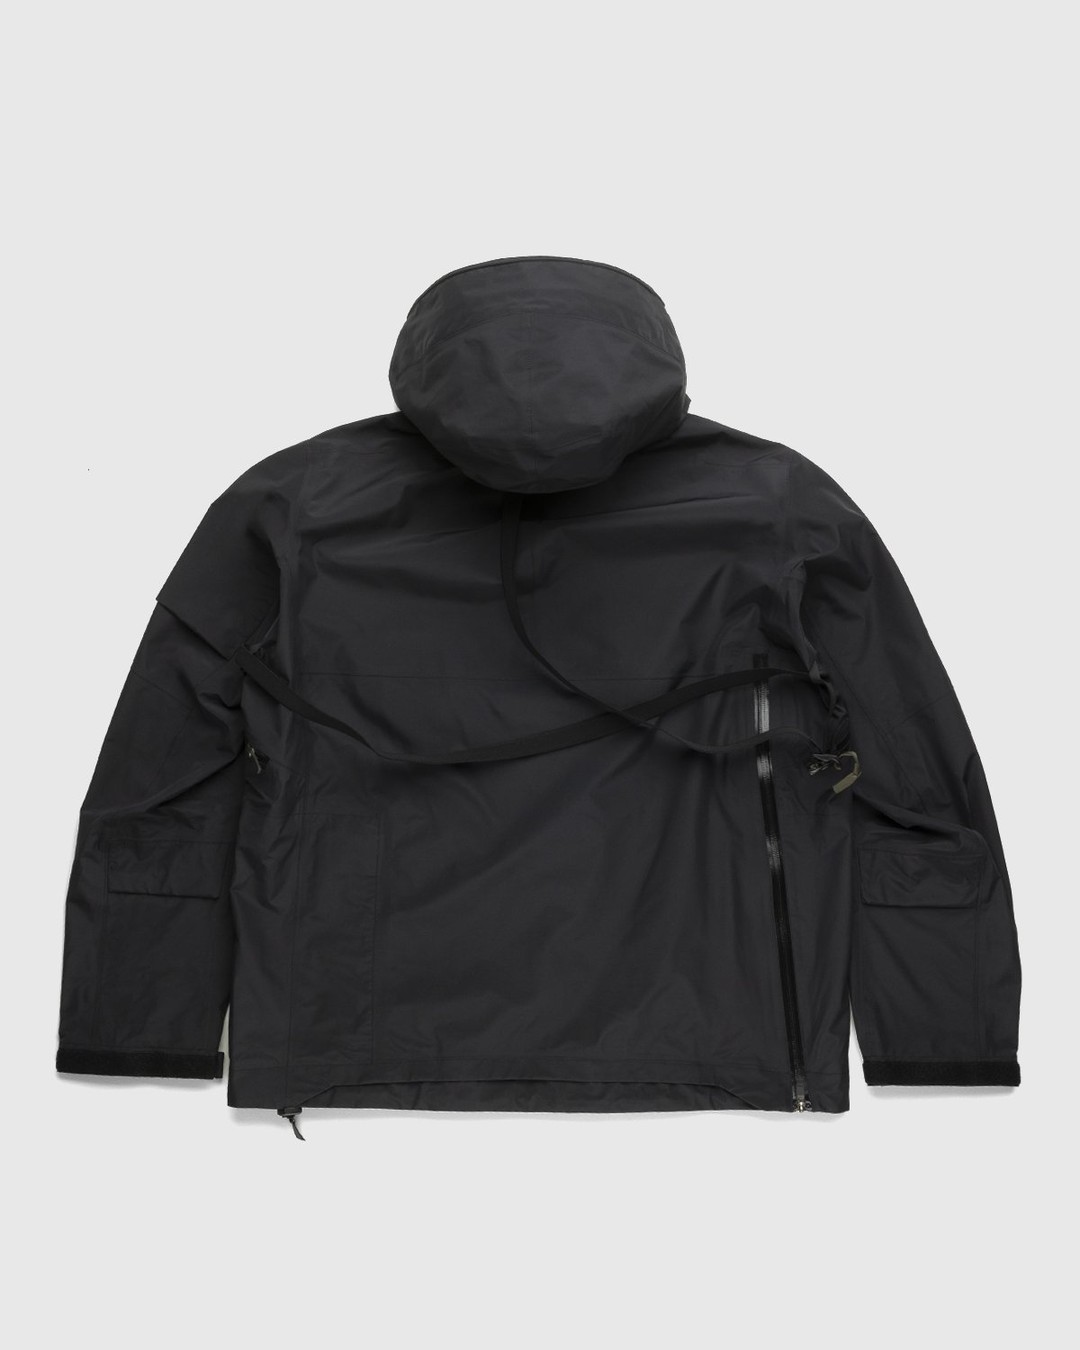 ACRONYM – J1W-GTPL Black - Outerwear - Black - Image 2